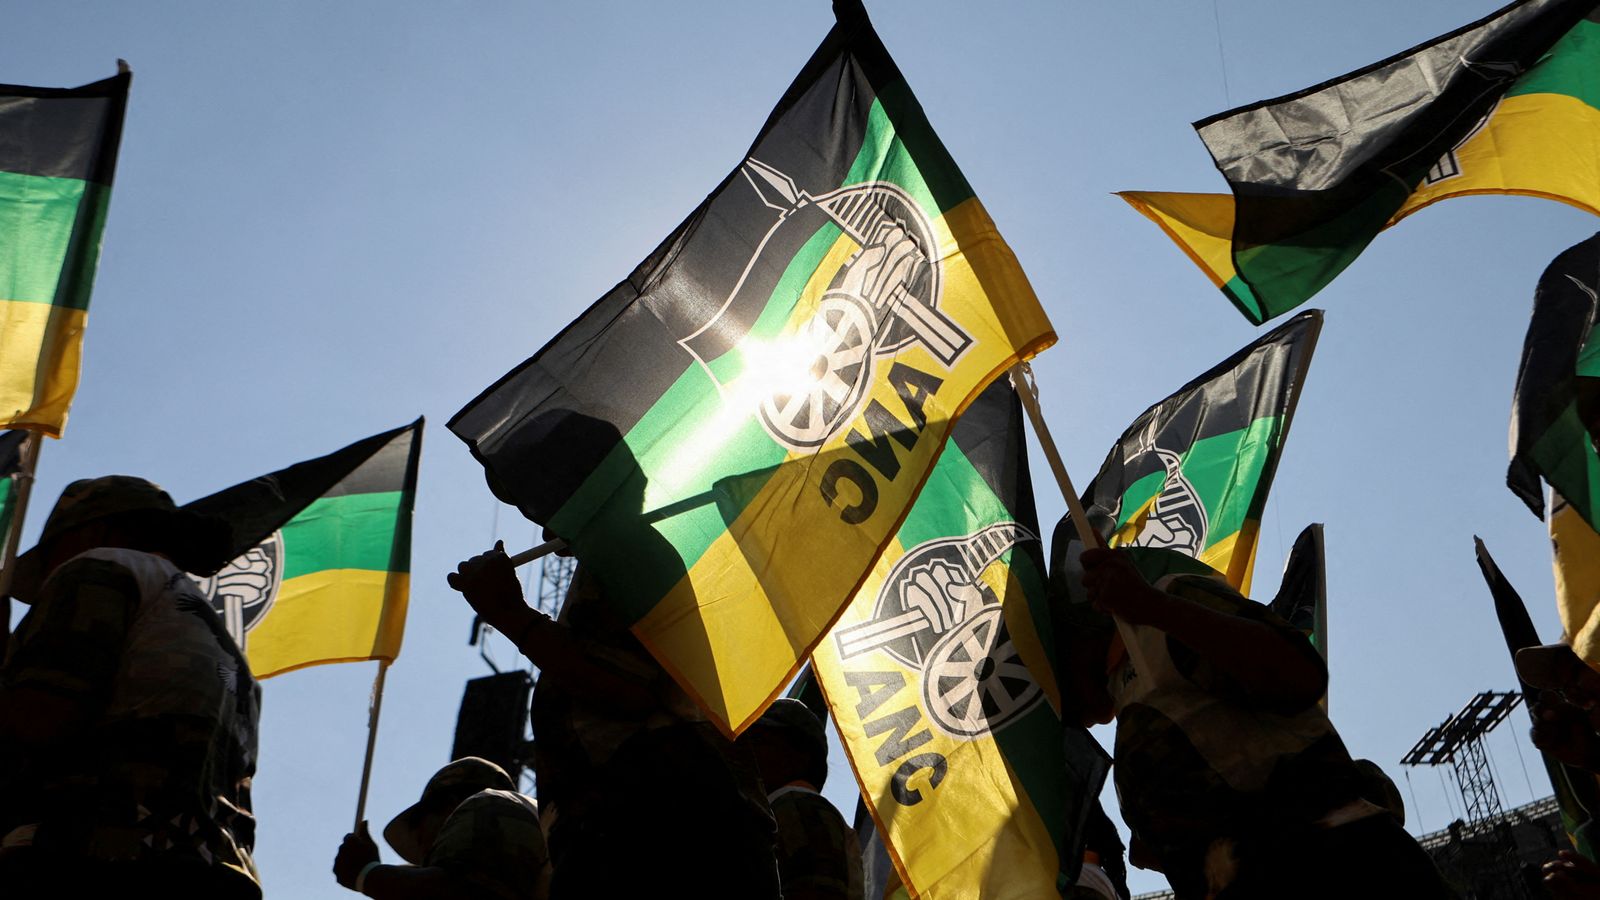 Élection en Afrique du Sud : l’ANC s’apprête à des négociations de coalition « compliquées » après avoir perdu la majorité parlementaire |  Nouvelles du monde